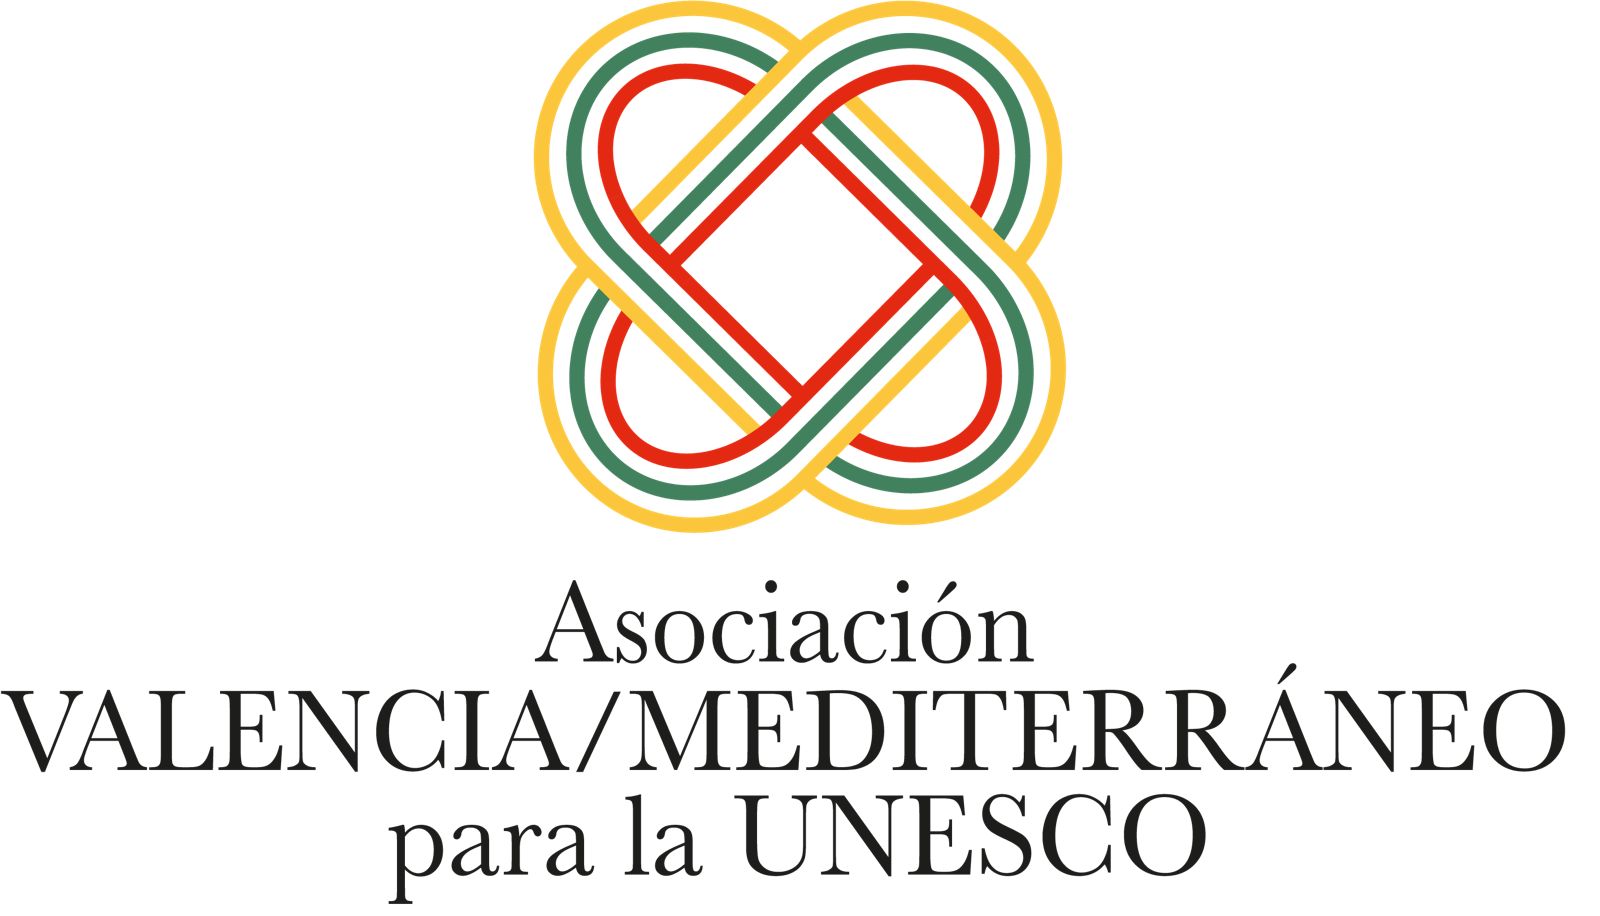 Asociación VALENCIA/MEDITERRÁNEO para la UNESCO